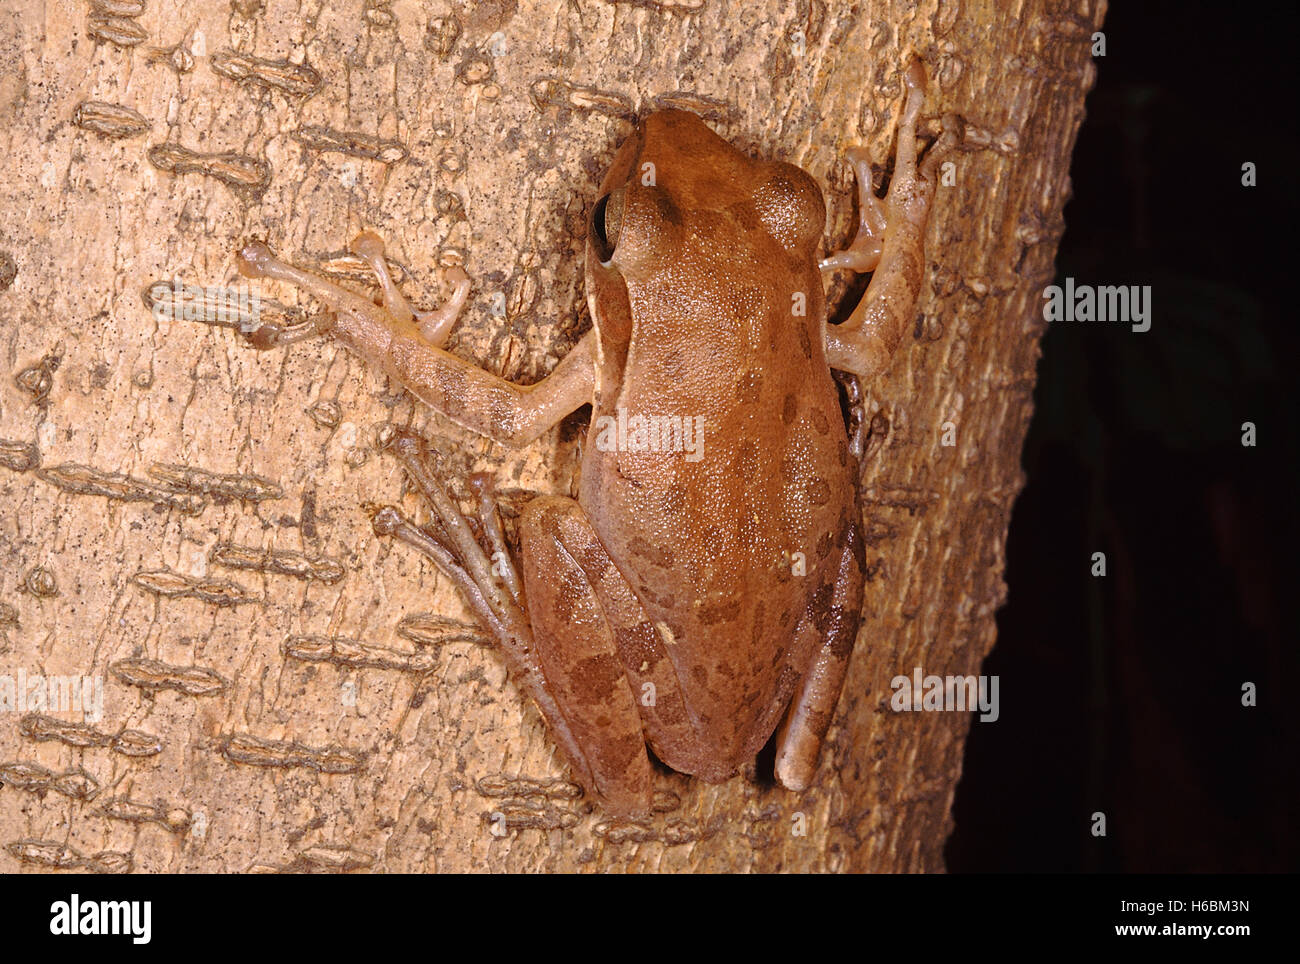 Polypedates maculatus. rana de árbol común. una rana de tamaño mediano que se encuentra en áreas de bosque deciduo húmedo. vive en los árboles Foto de stock